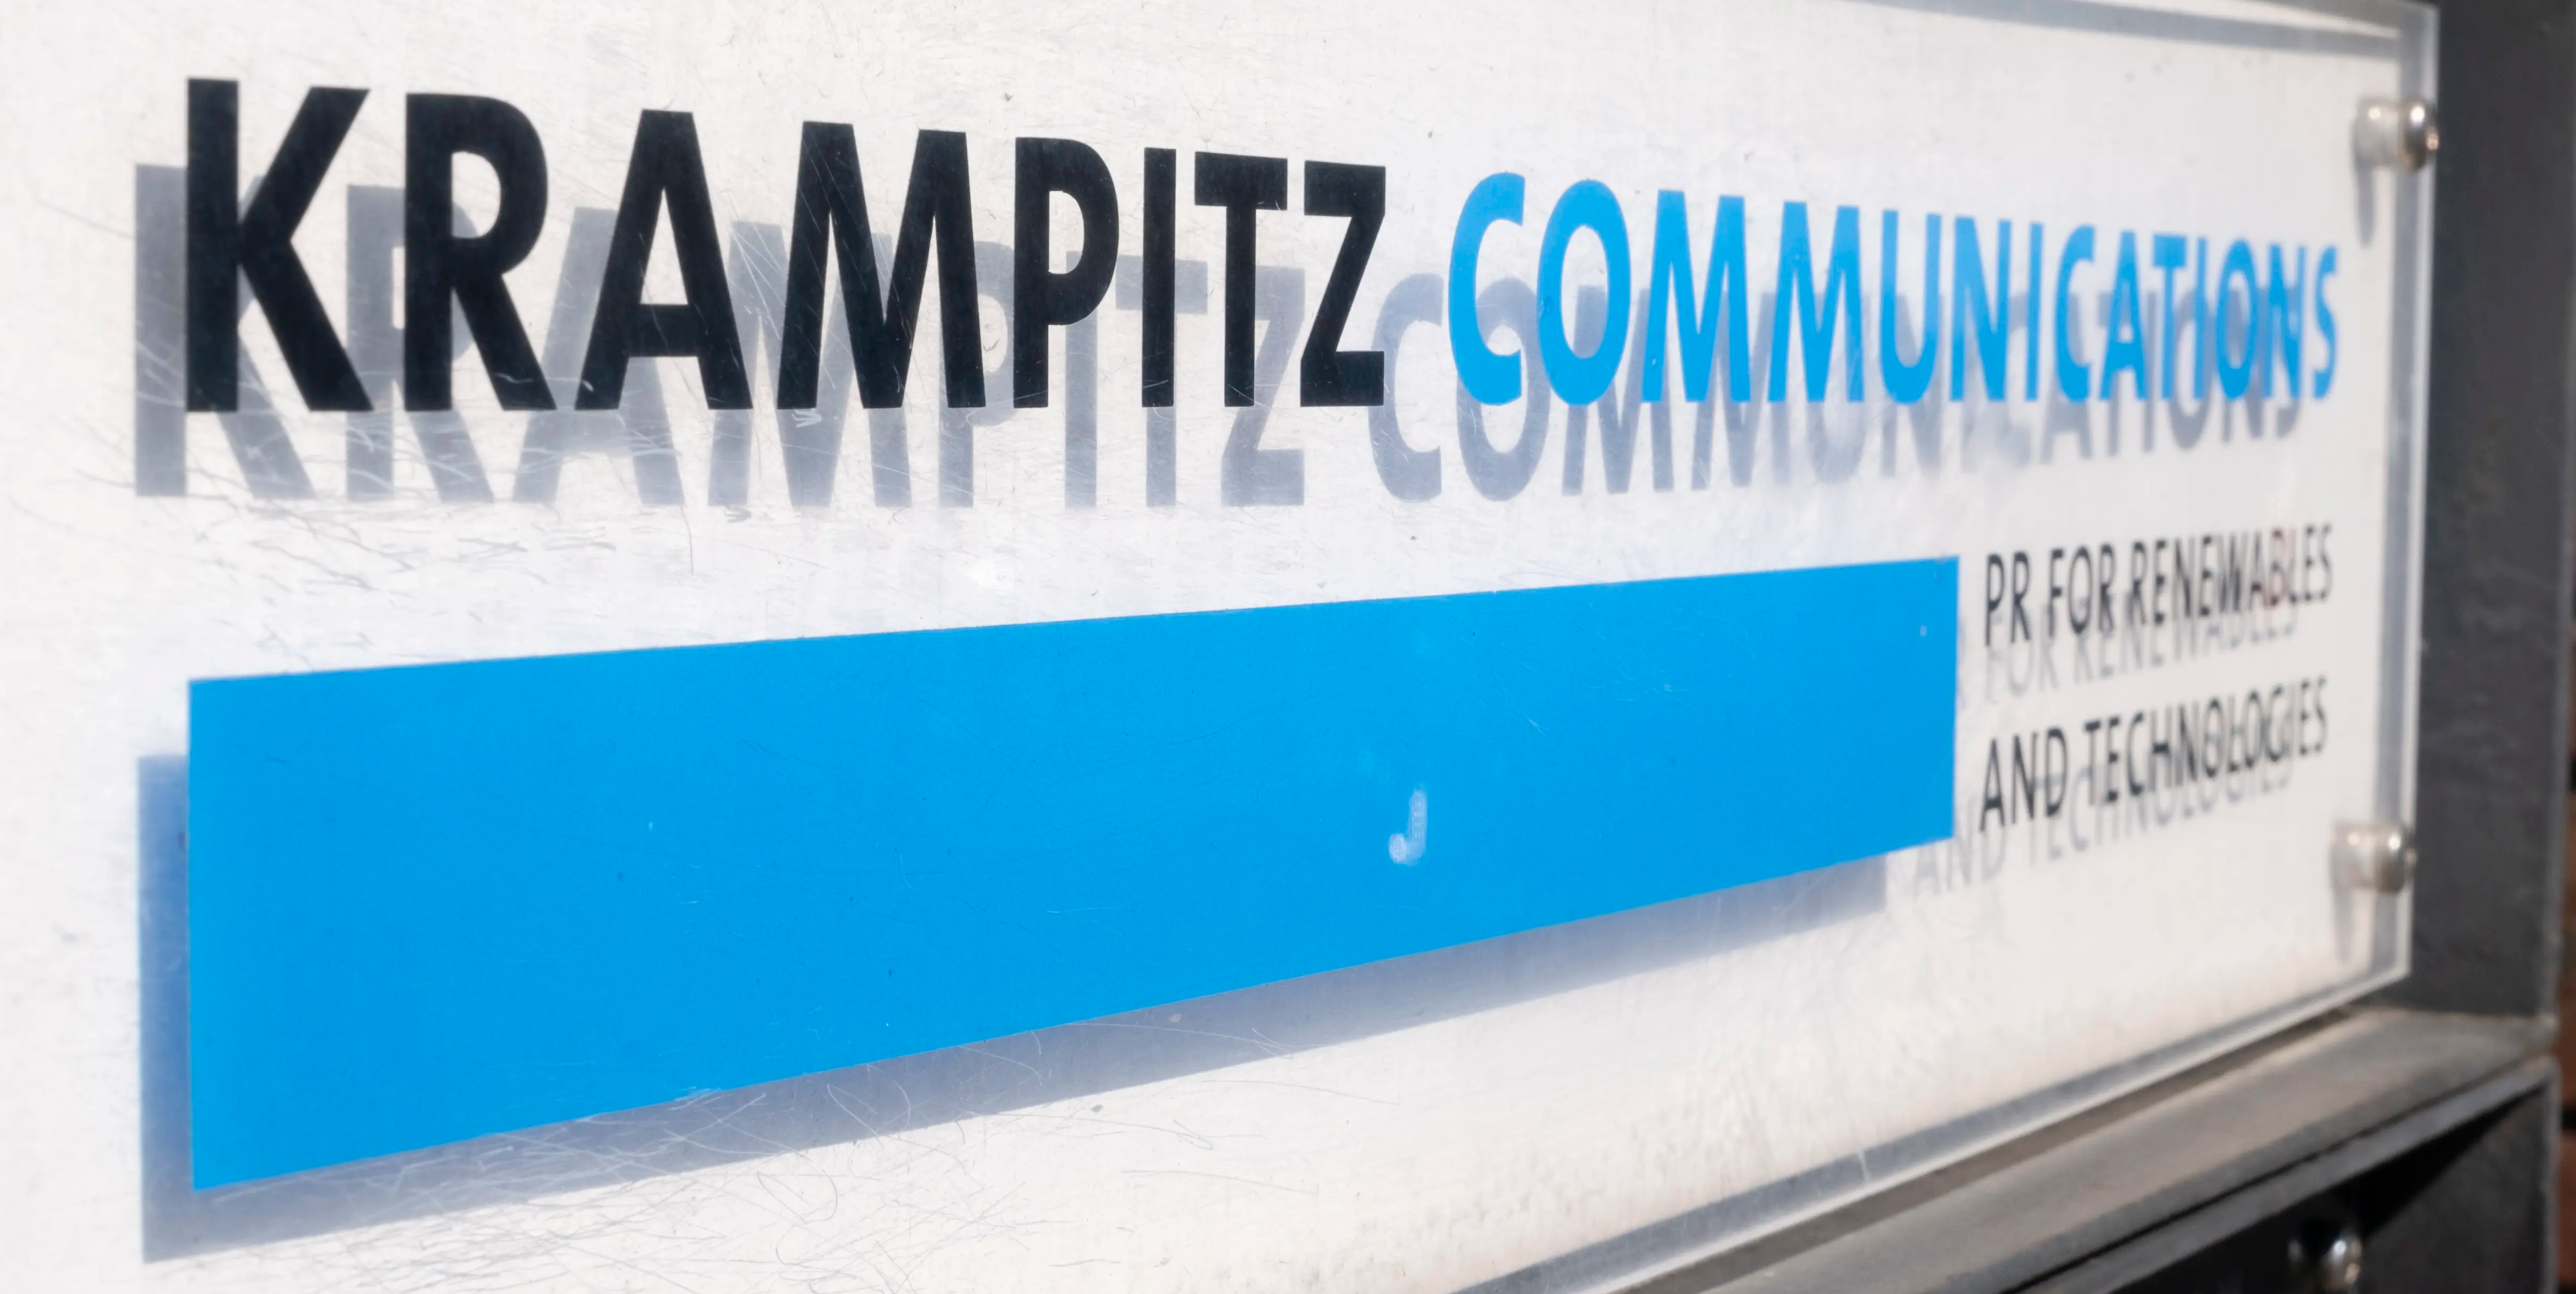 Krampitz Communications Agenturschild vor Backsteinmauer